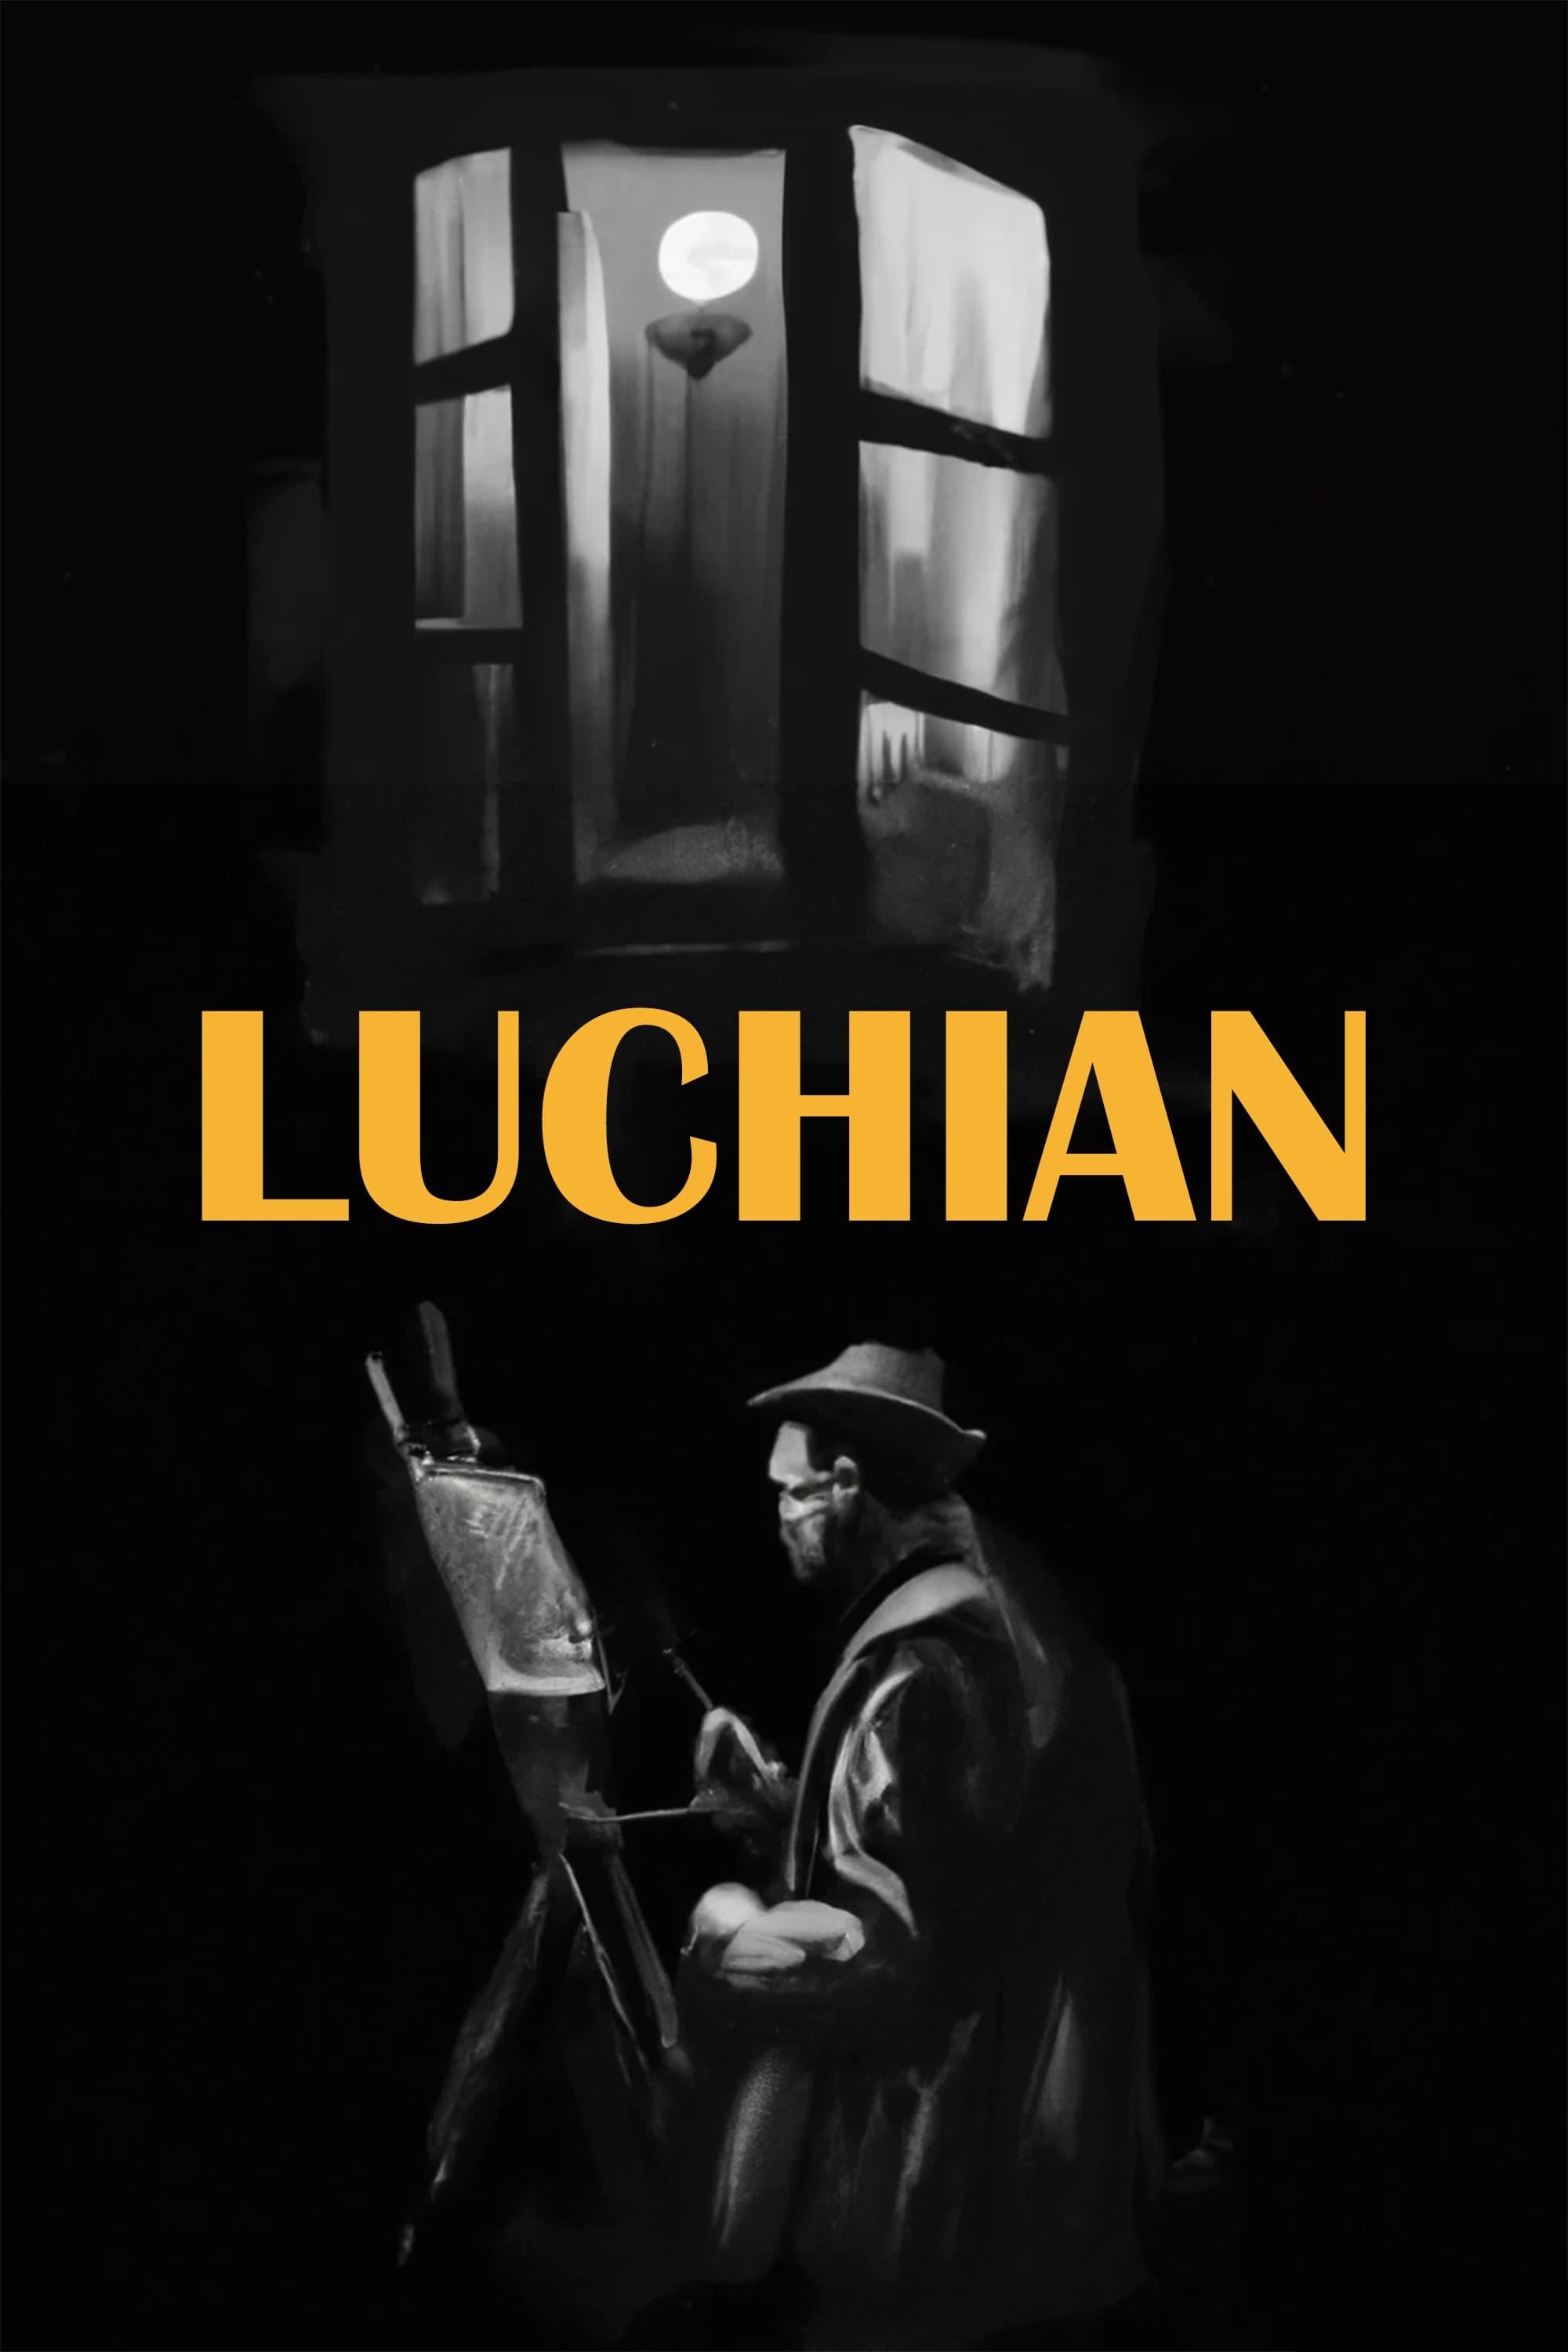 Luchian poster